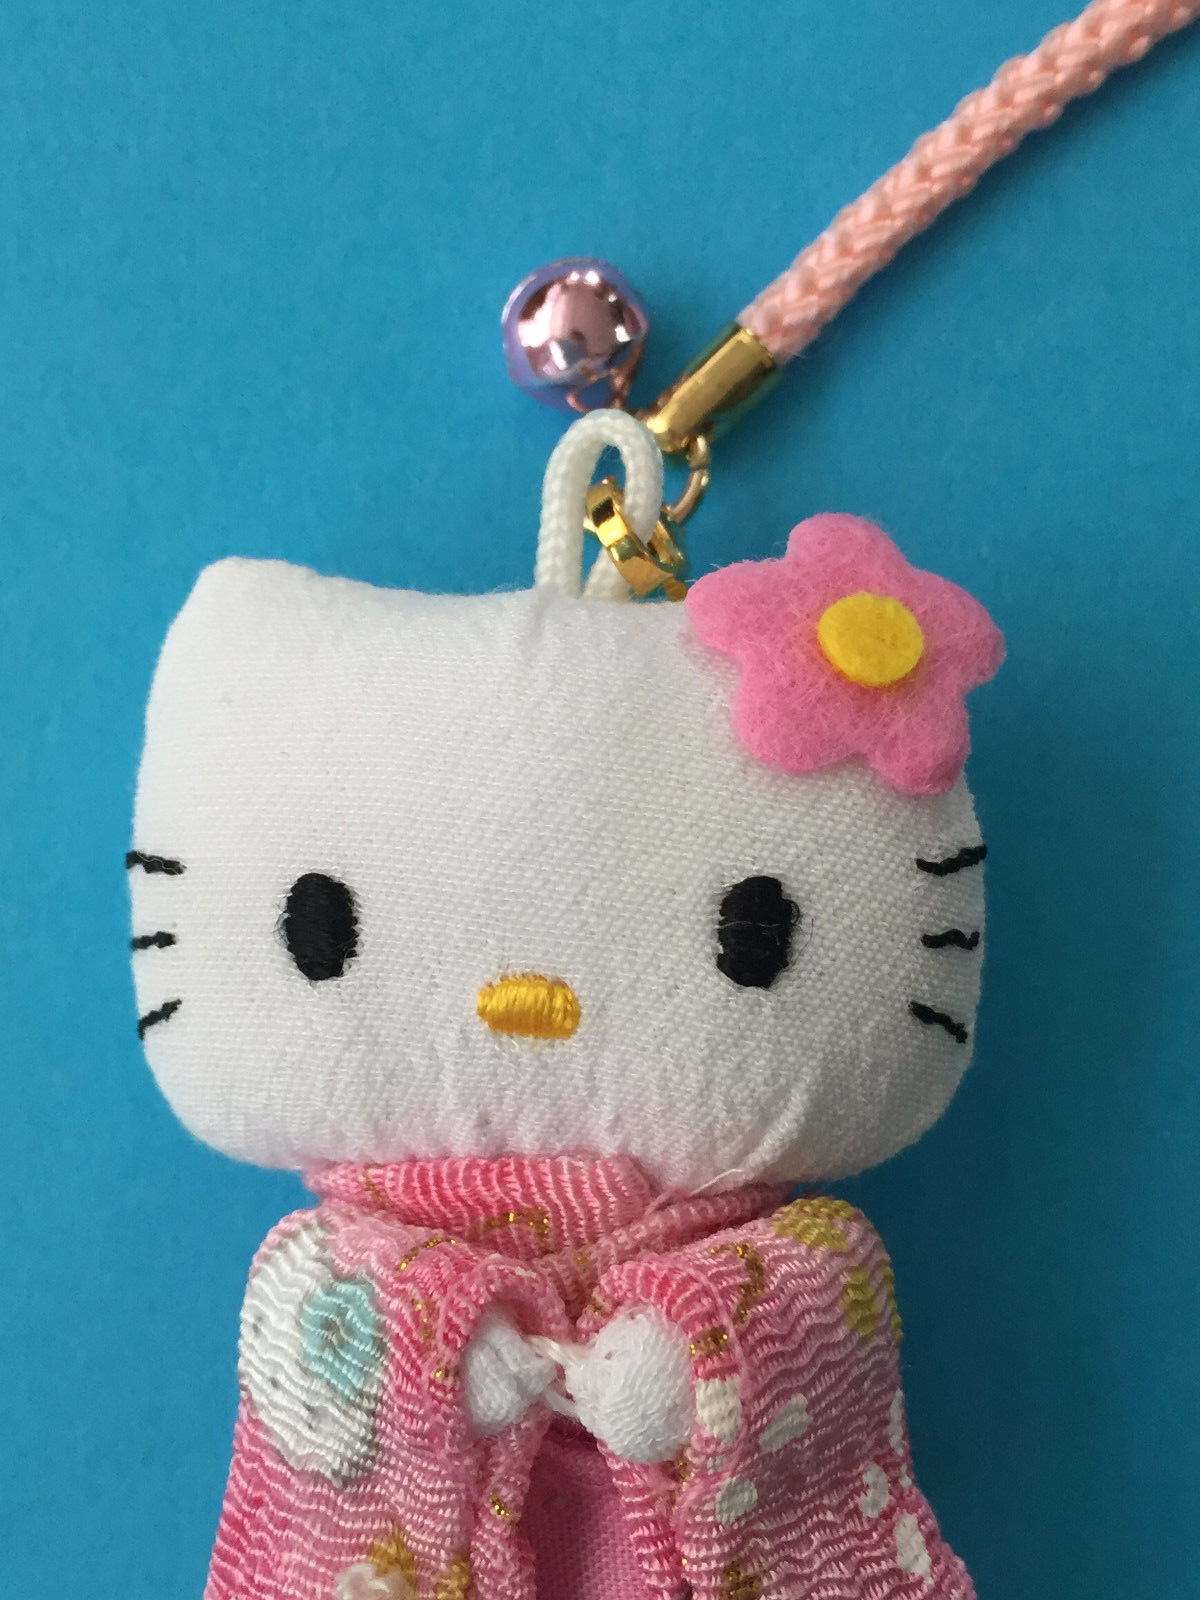 F/S Hello Kitty Key Chain Strap Kimono Accessory Limited in Kyoto Japan Peridot